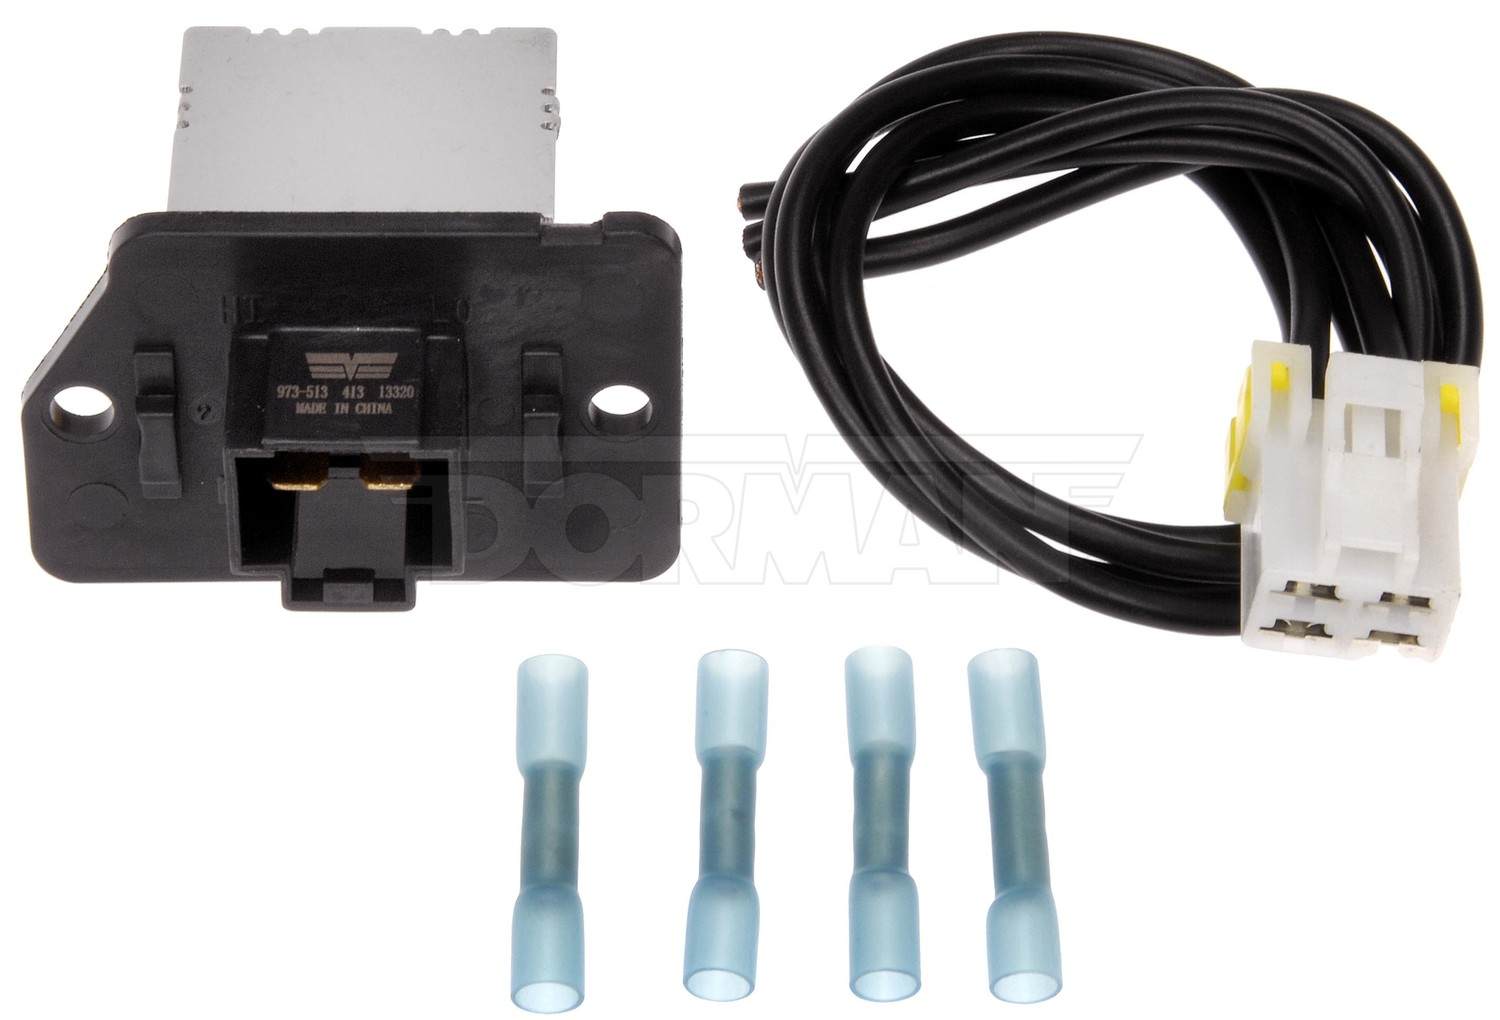 DORMAN OE SOLUTIONS - HVAC Blower Motor Resistor Kit - DRE 973-513